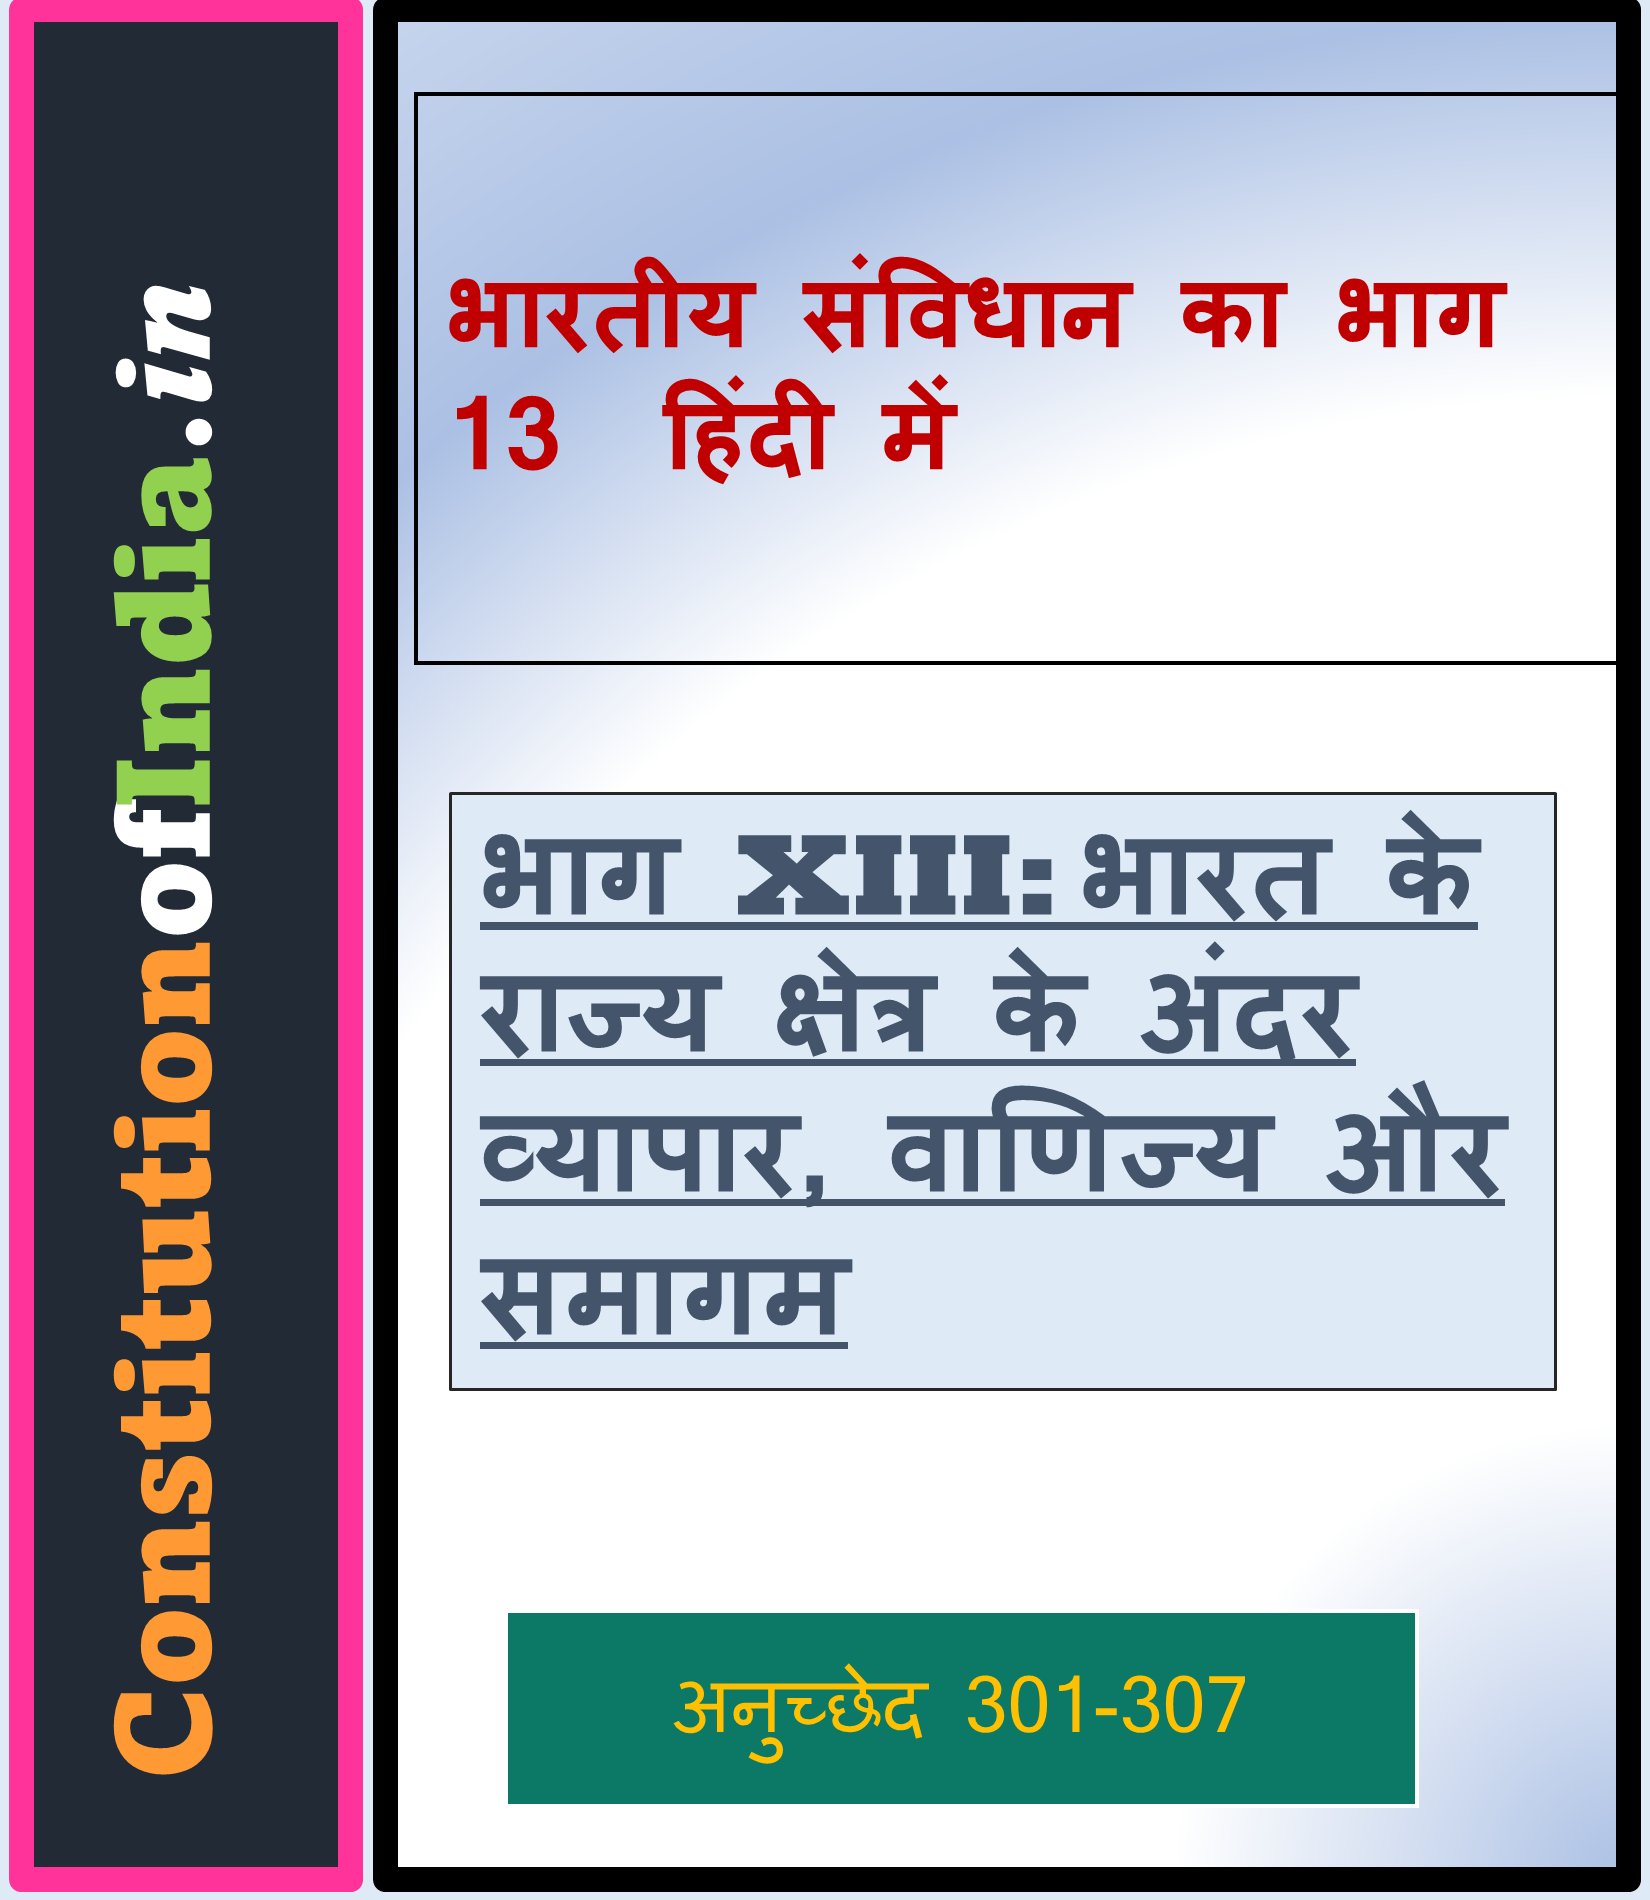 भारतीय संविधान का भाग 13 हिंदी में